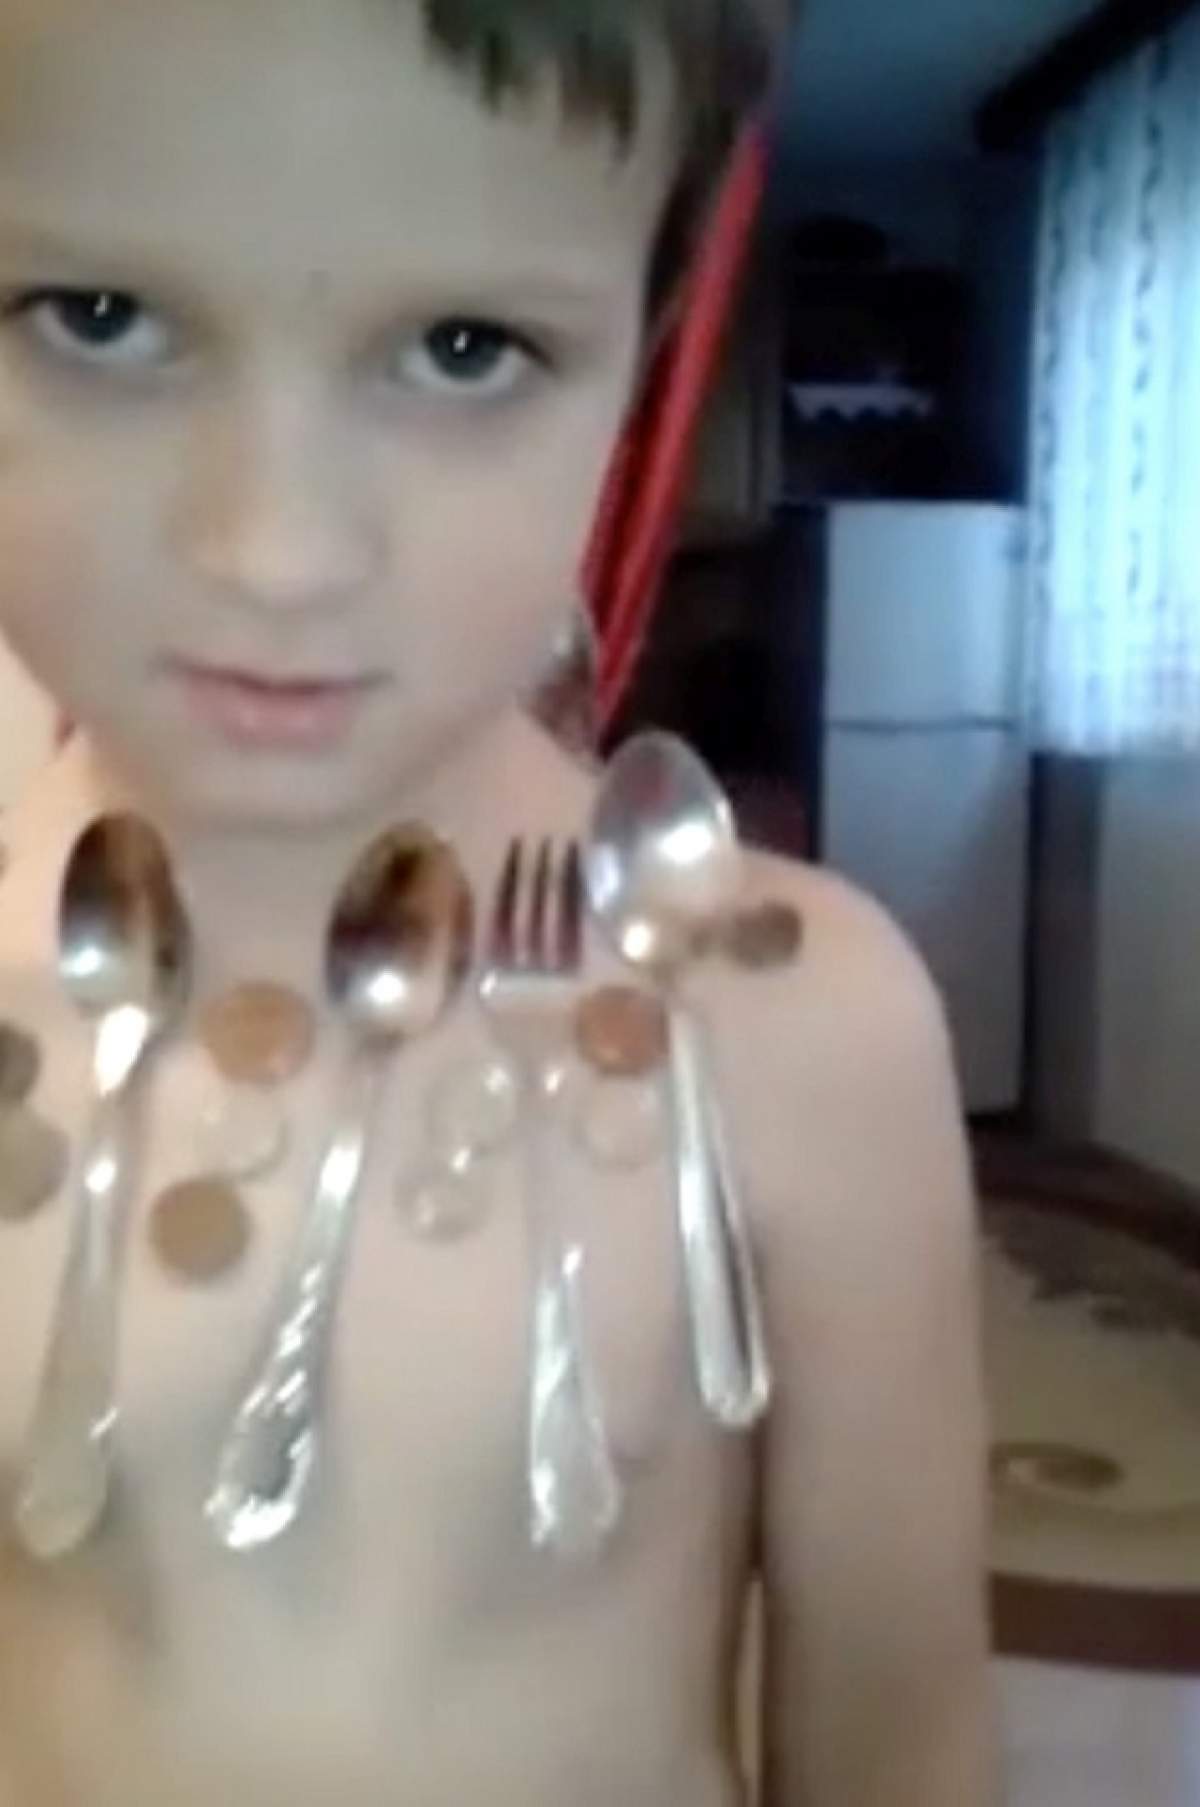 VIDEO / Ce pui pe el se lipeşte! Un băieţel de 5 ani a fost depistat cu un fenomen bizar în faţa căruia medicii au amuţit